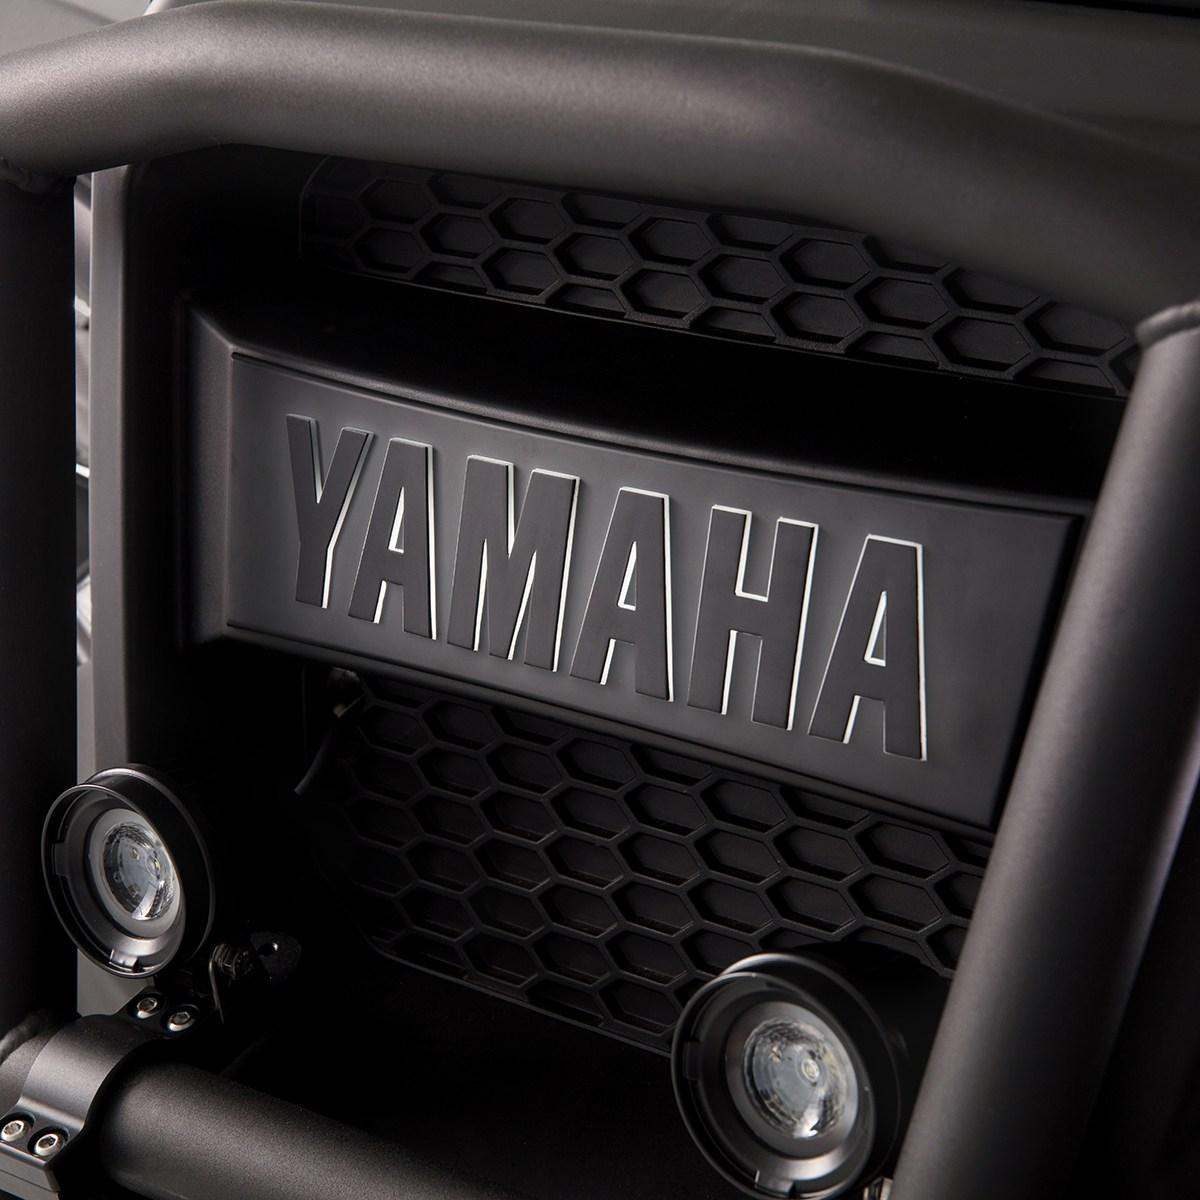 Mit dem hintergrundbeleuchteten „YAMAHA“-Logo am Kühlergrill vorne bleibst du nicht unbemerkt. Dieser Artikel ersetzt das Standardlogo durch ein schickes Gegenstück mit LED-Hintergrundbeleuchtung.